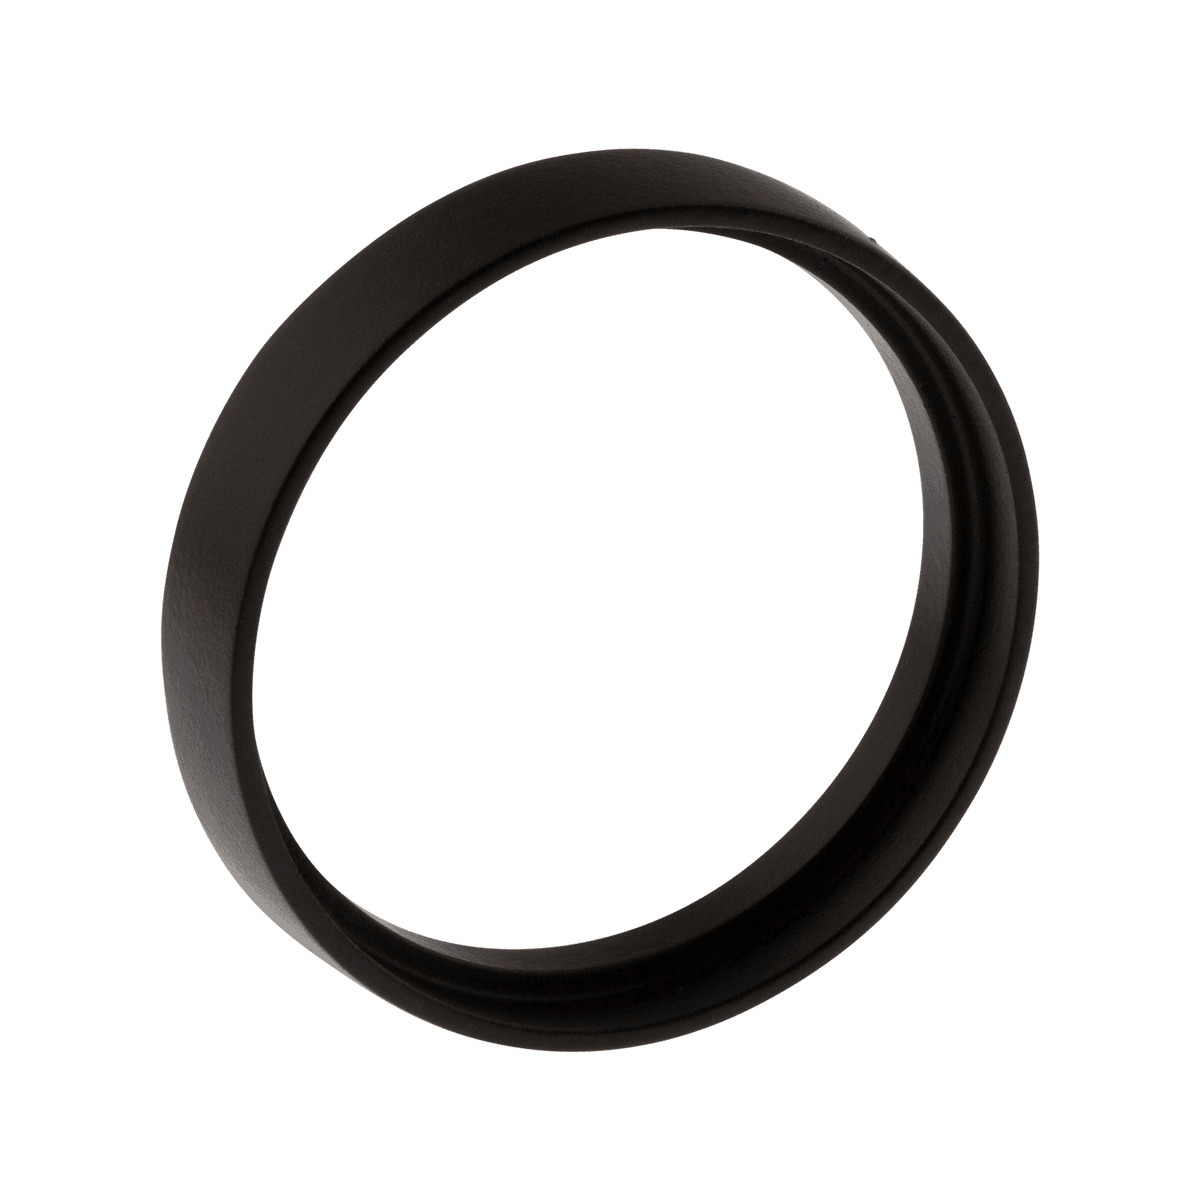 Spin Ring in Satin Black